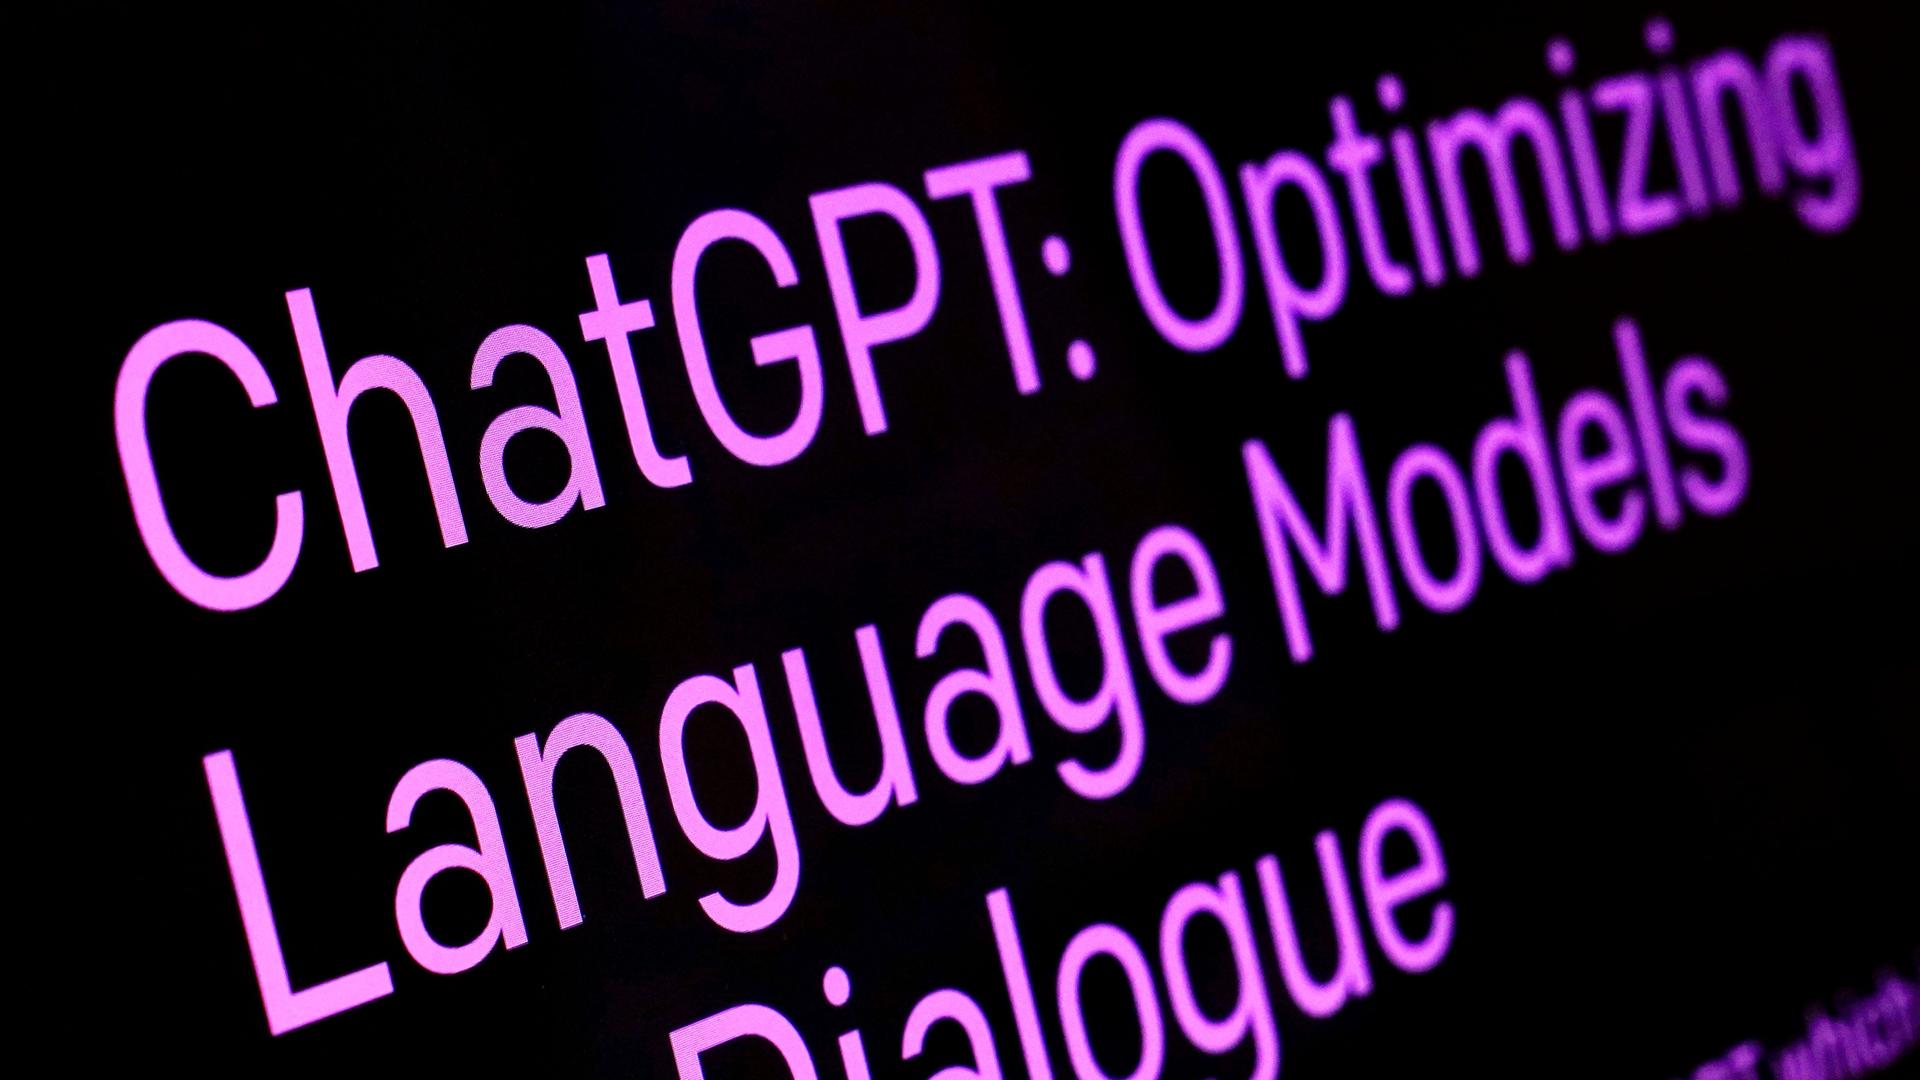 Auf einem schwarzen Bildschirm steht in lilafarbener Schrift "ChatGPT: Optimizing Laguage Models Dialogue".